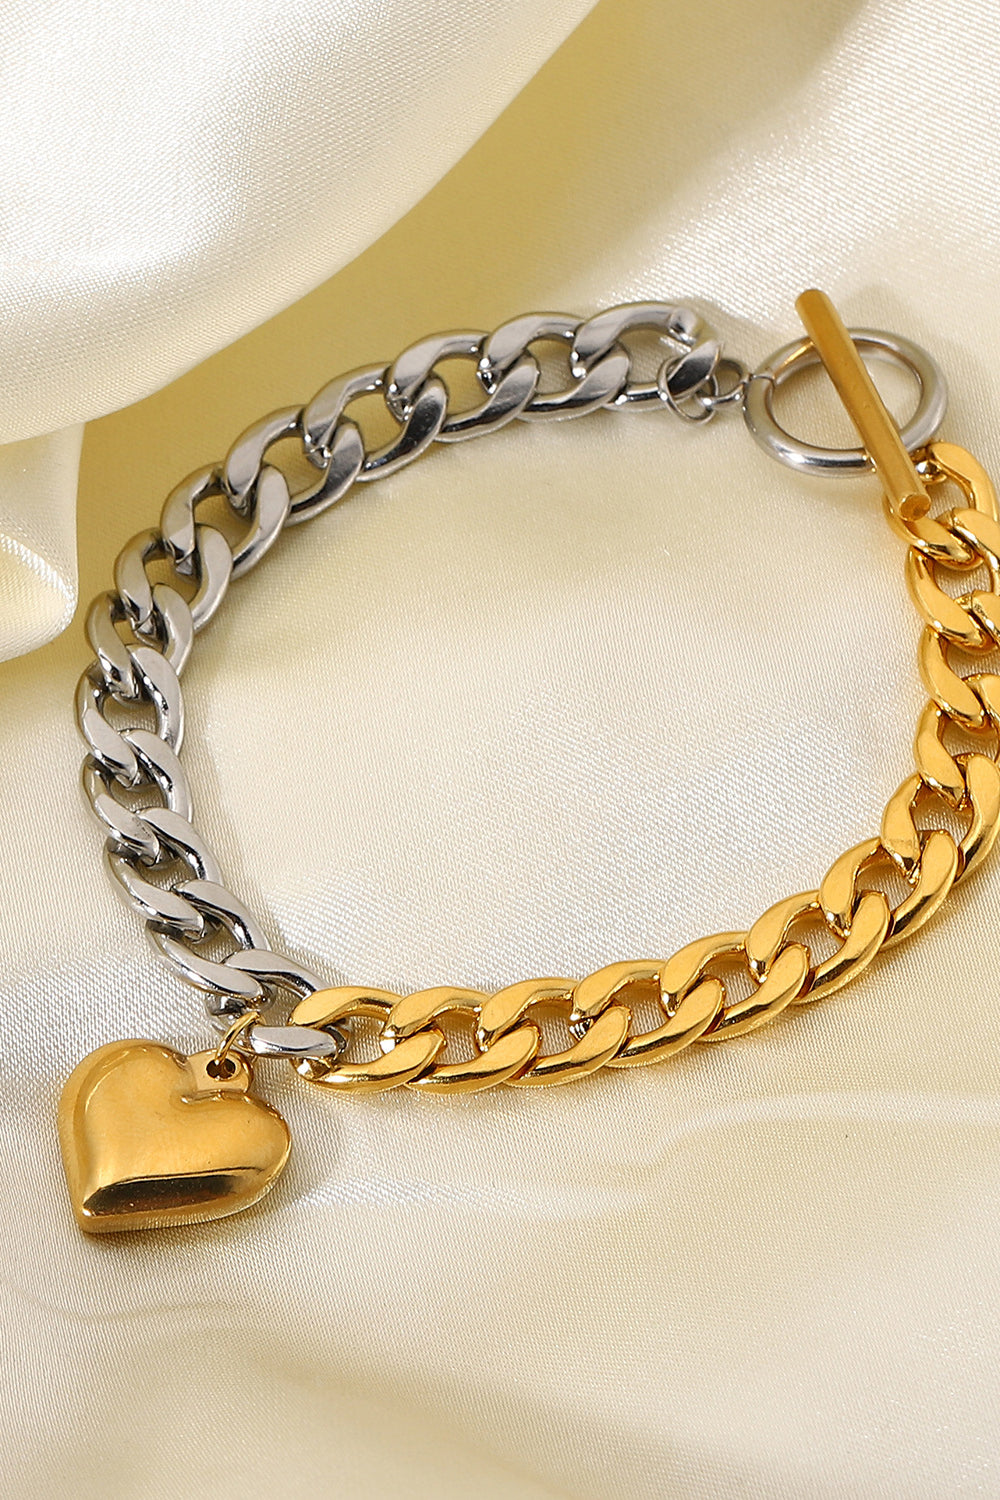 Trendsi Cupid Beauty Supplies Woman Bracelets Chain Heart Charm Bracelet